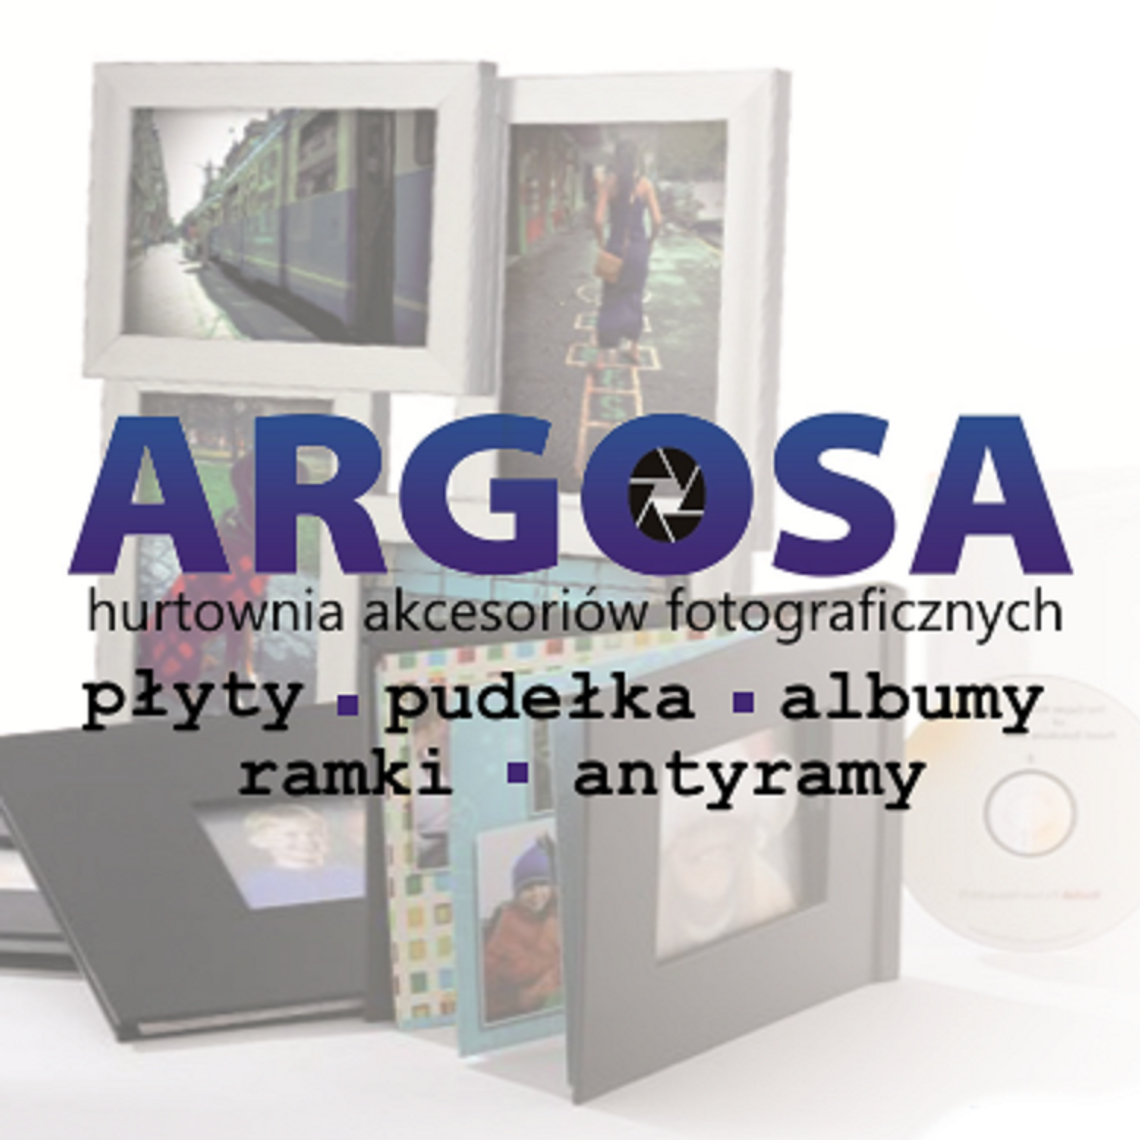 Mikroprzedsiębiorstwo: Hurtownia akcesoriów fotograficznych ARGOSA